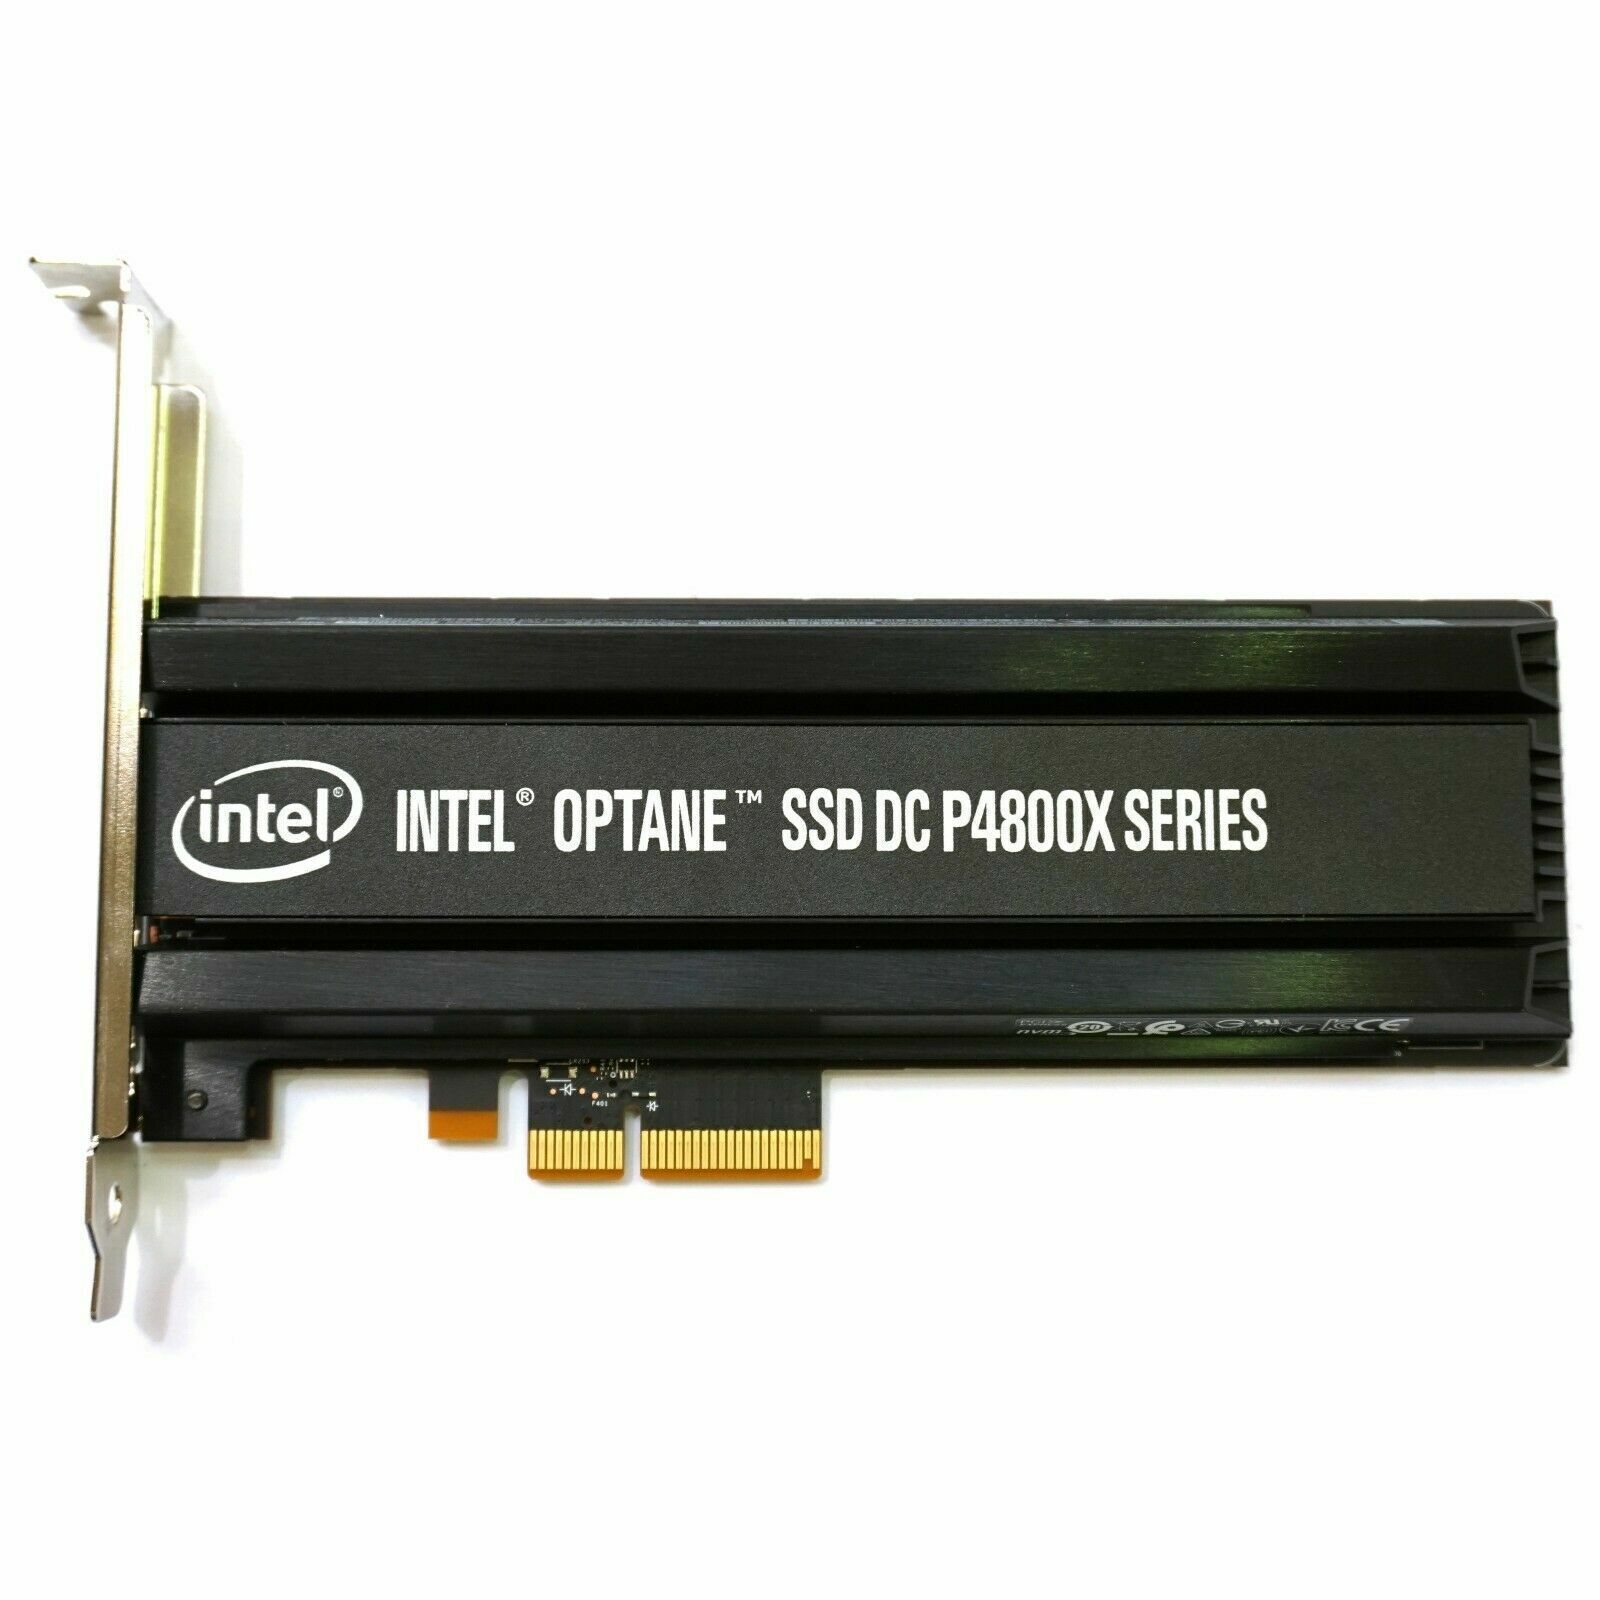 Intel Optane DC P4800X 750GB SSD 82PBW HHHL PCIe 3.0 x4 NVMe SSDPED1K750GA01